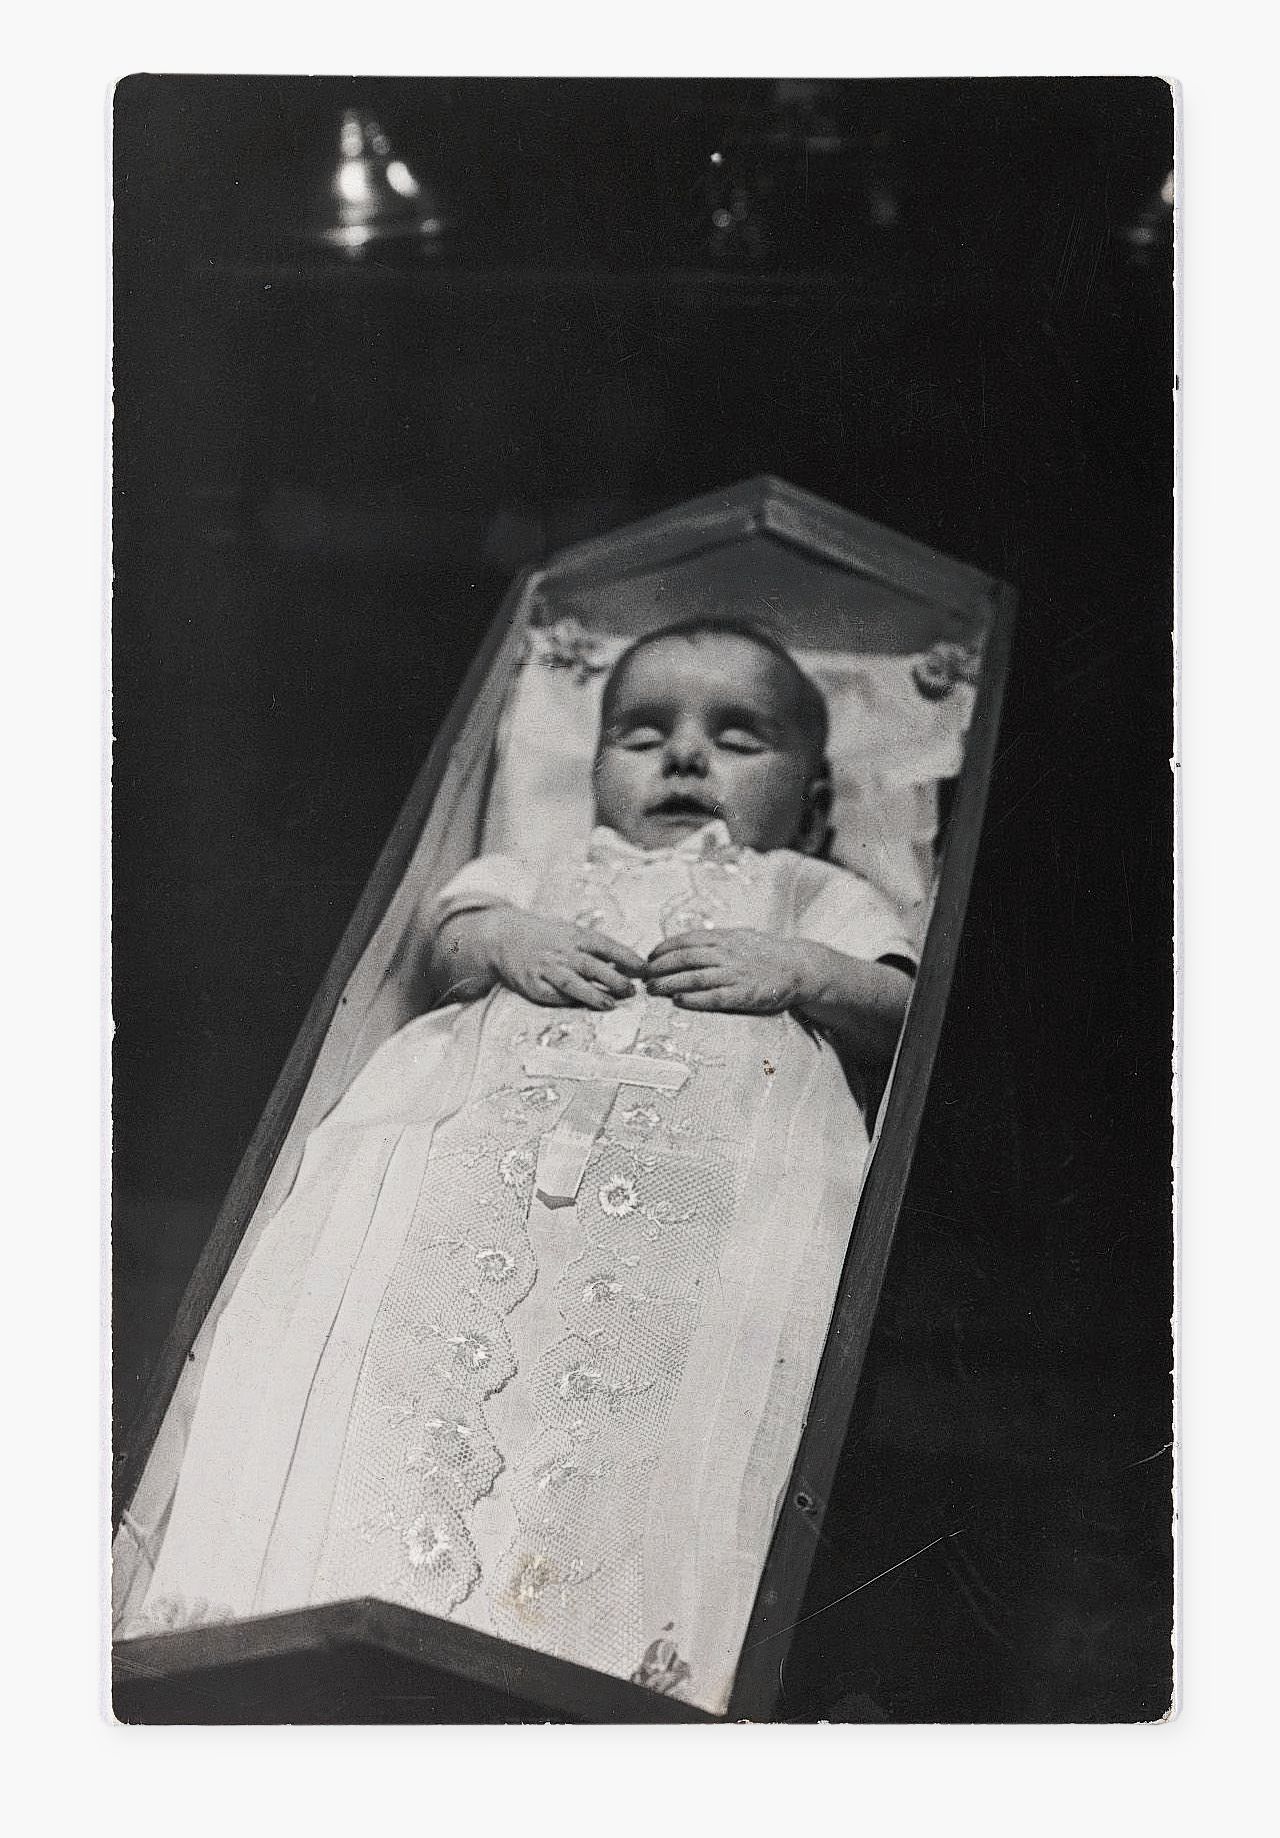 Doodsportretje van baby in de negentiende eeuw.